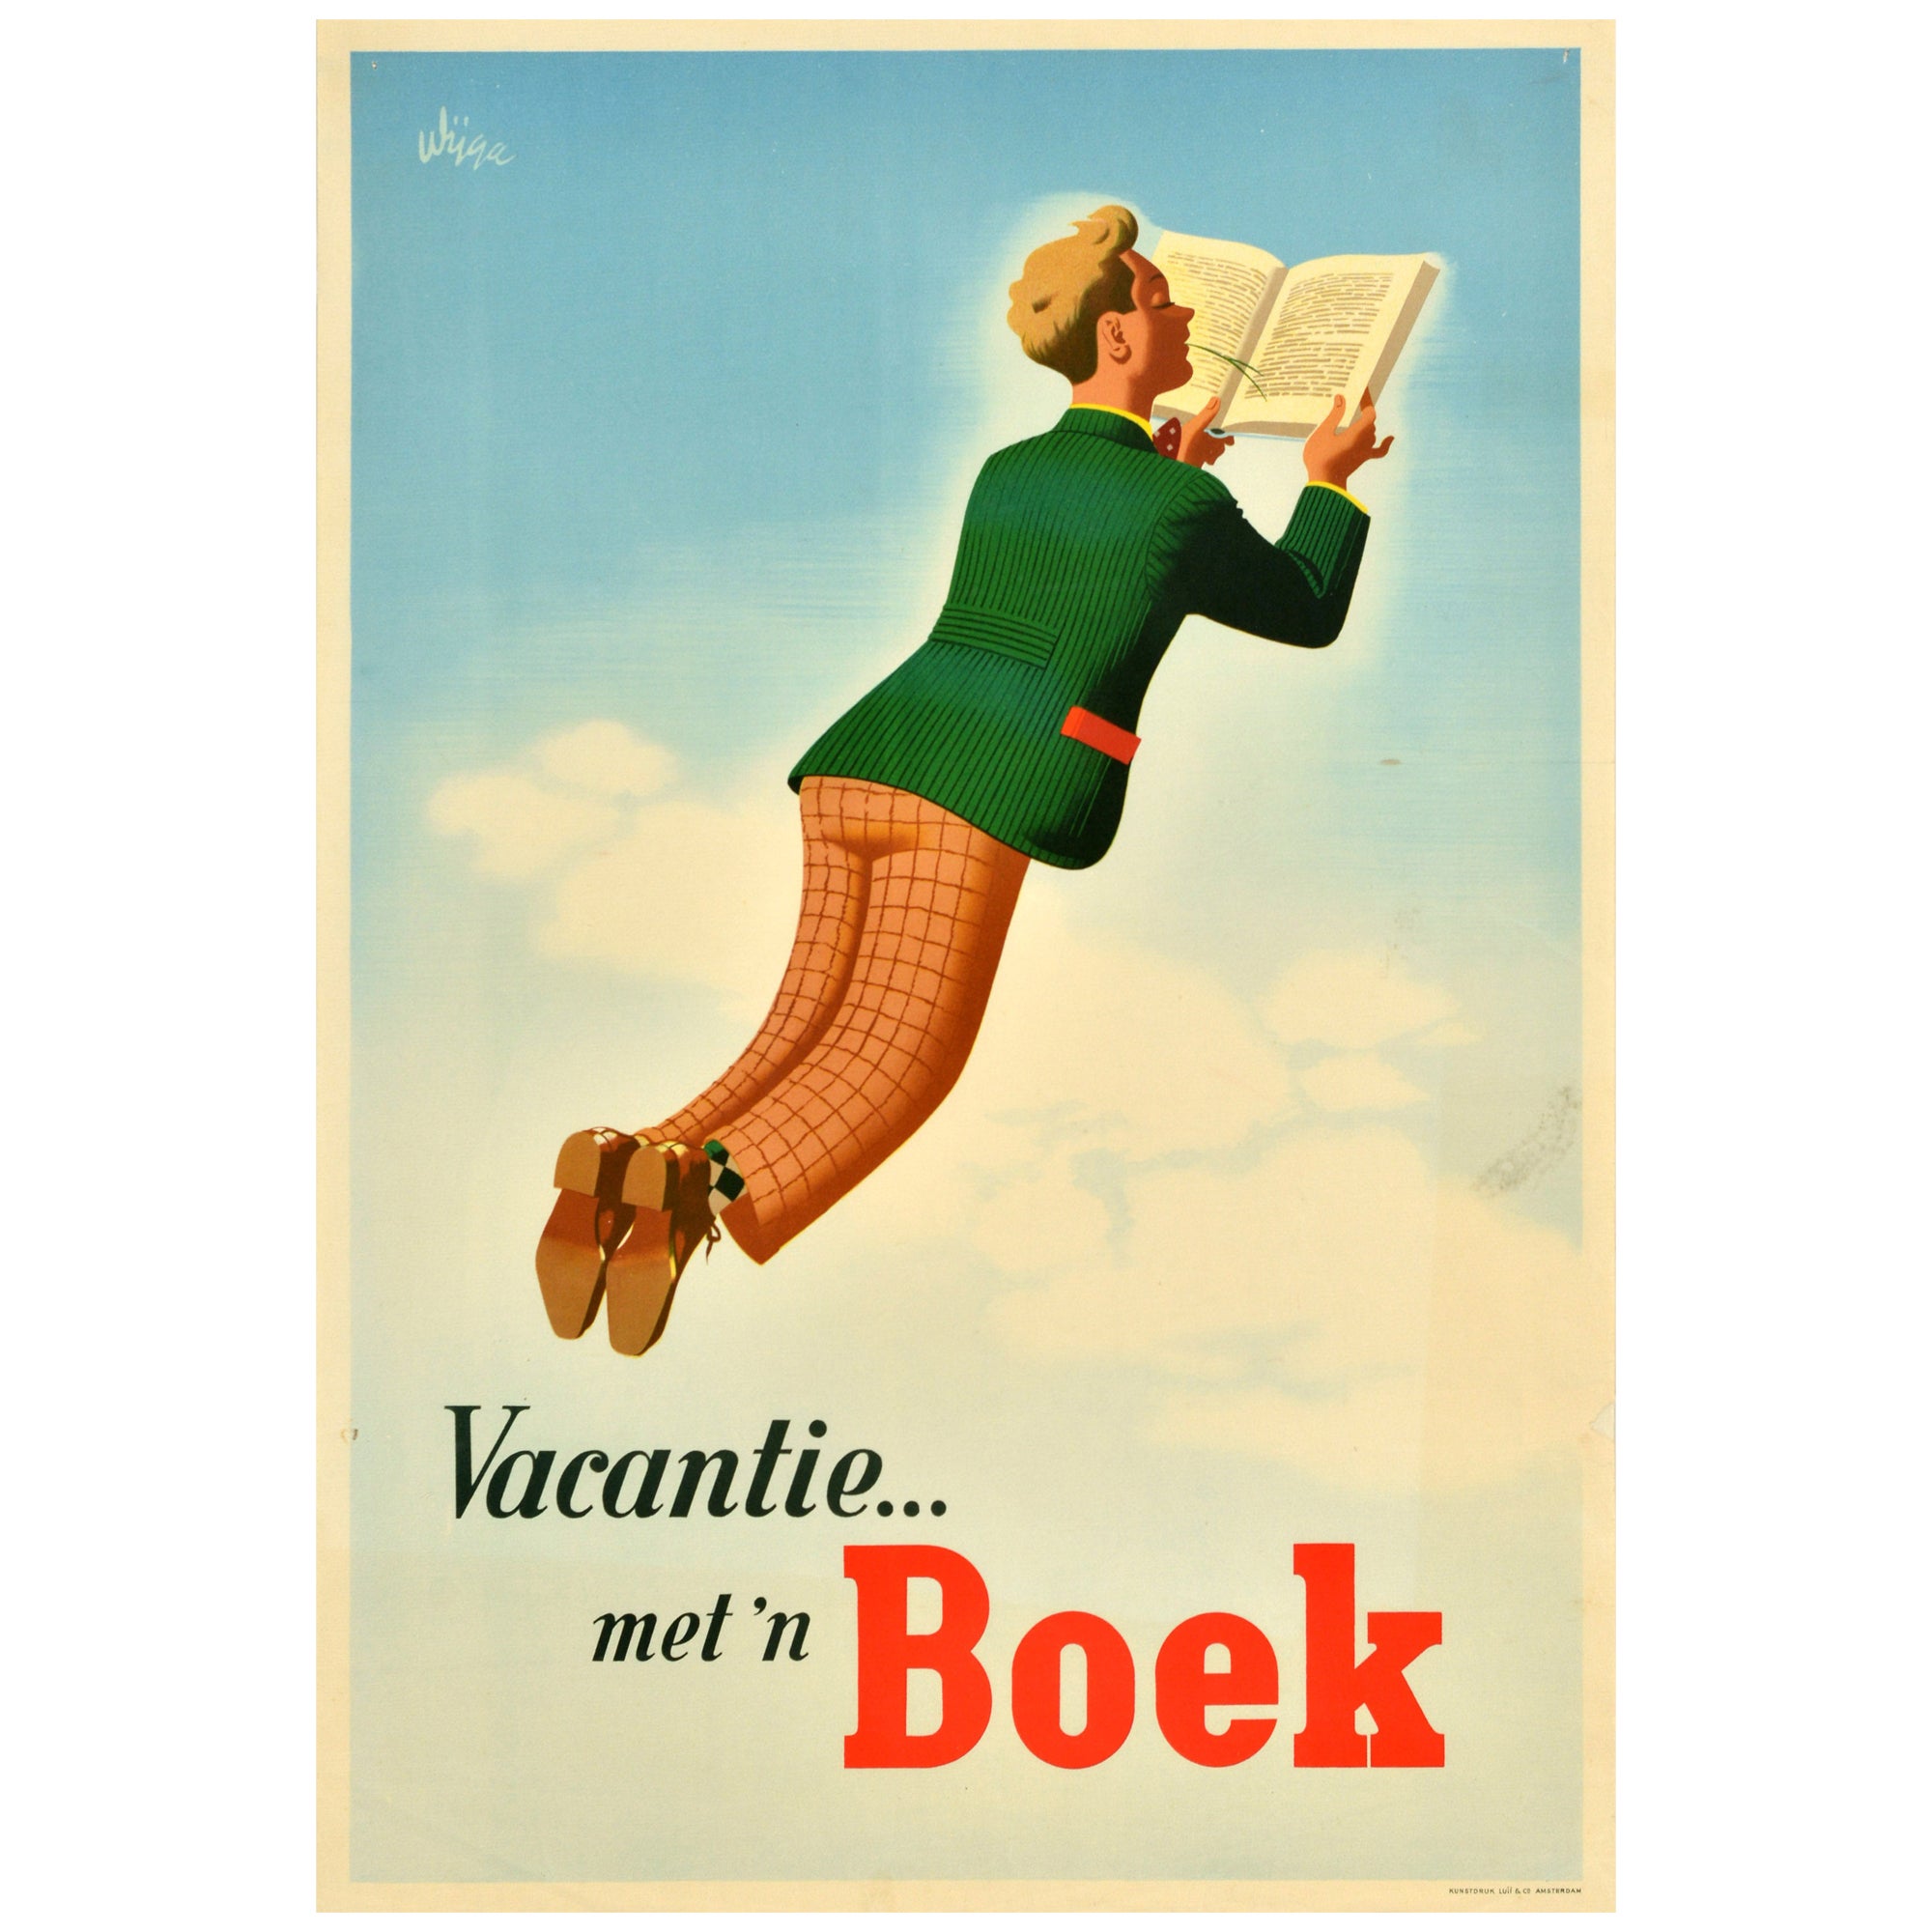 Original Vintage Advertising Poster Vacation Book Vacantie Boek Sky Jan Wijga For Sale